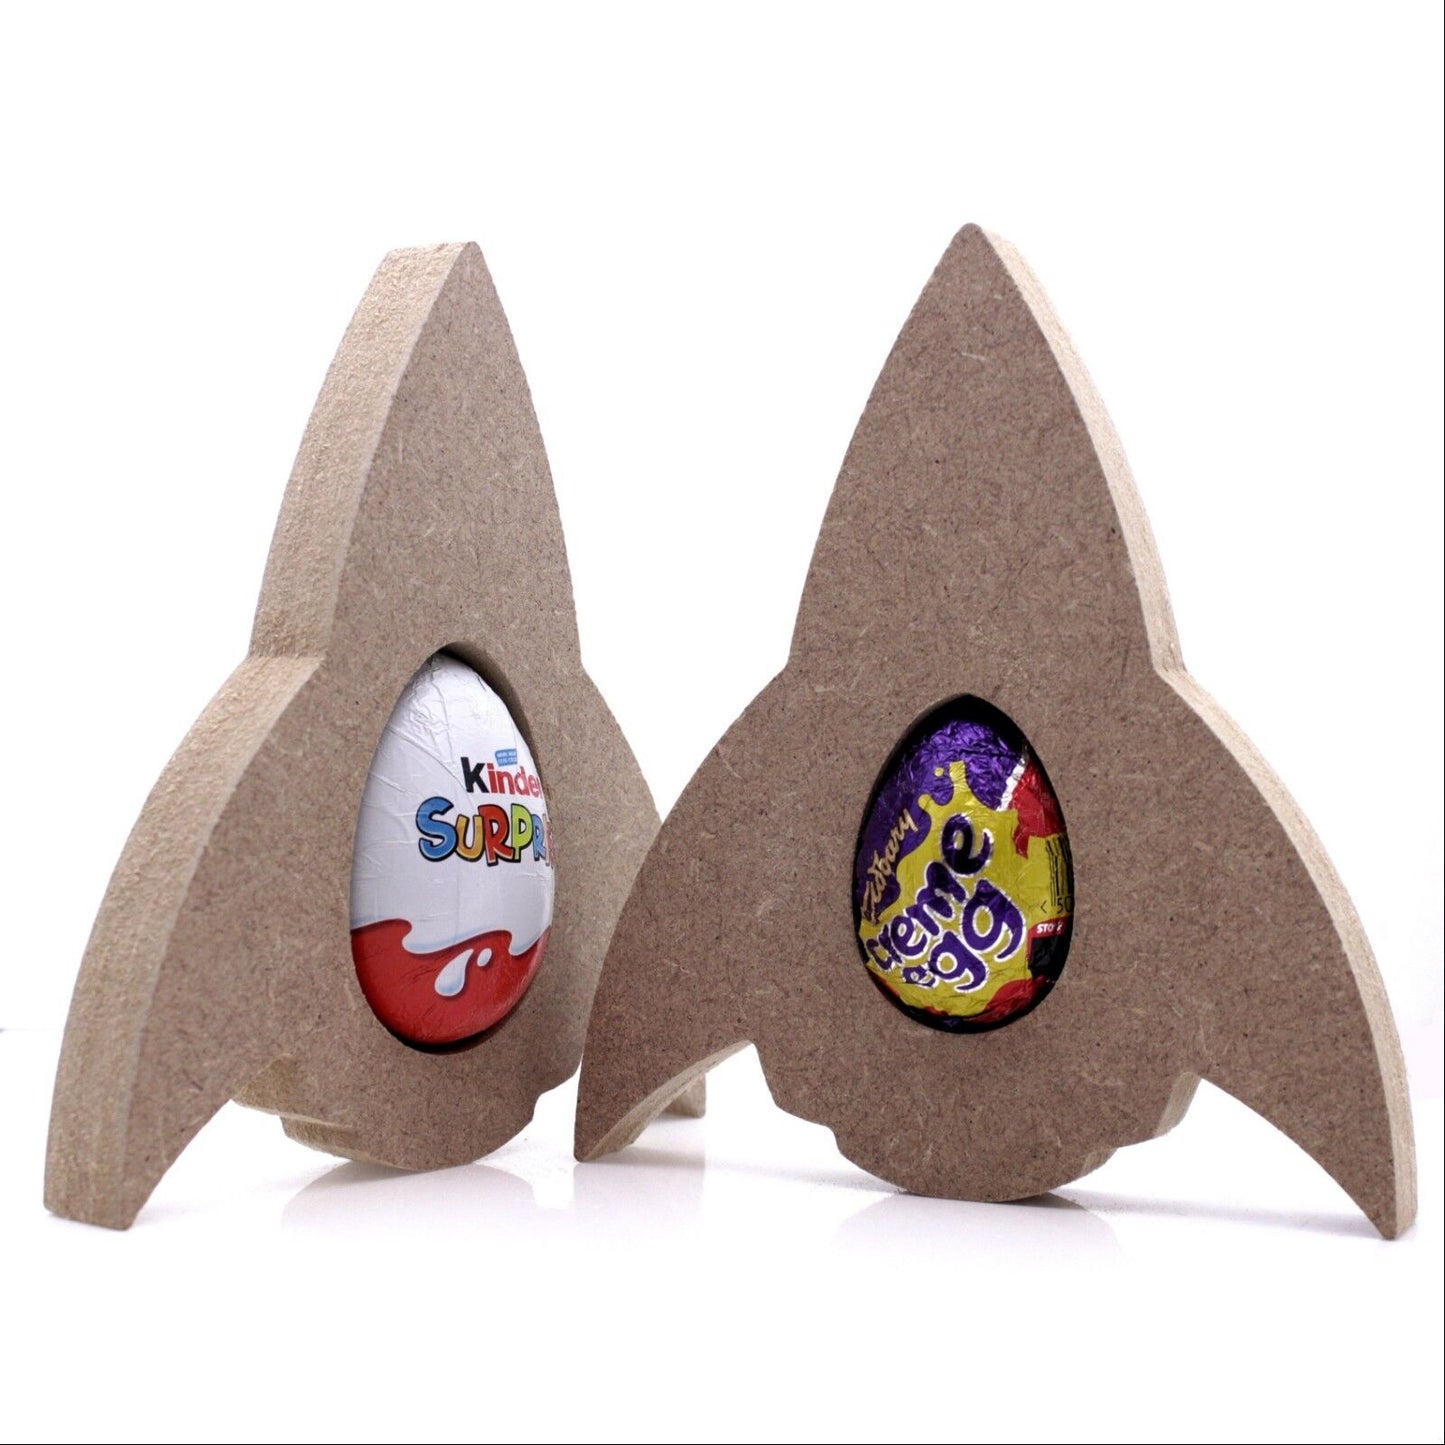 Free Standing 18mm MDF Rocket Easter Egg Holder Shape. Kinder Egg, Creme Egg